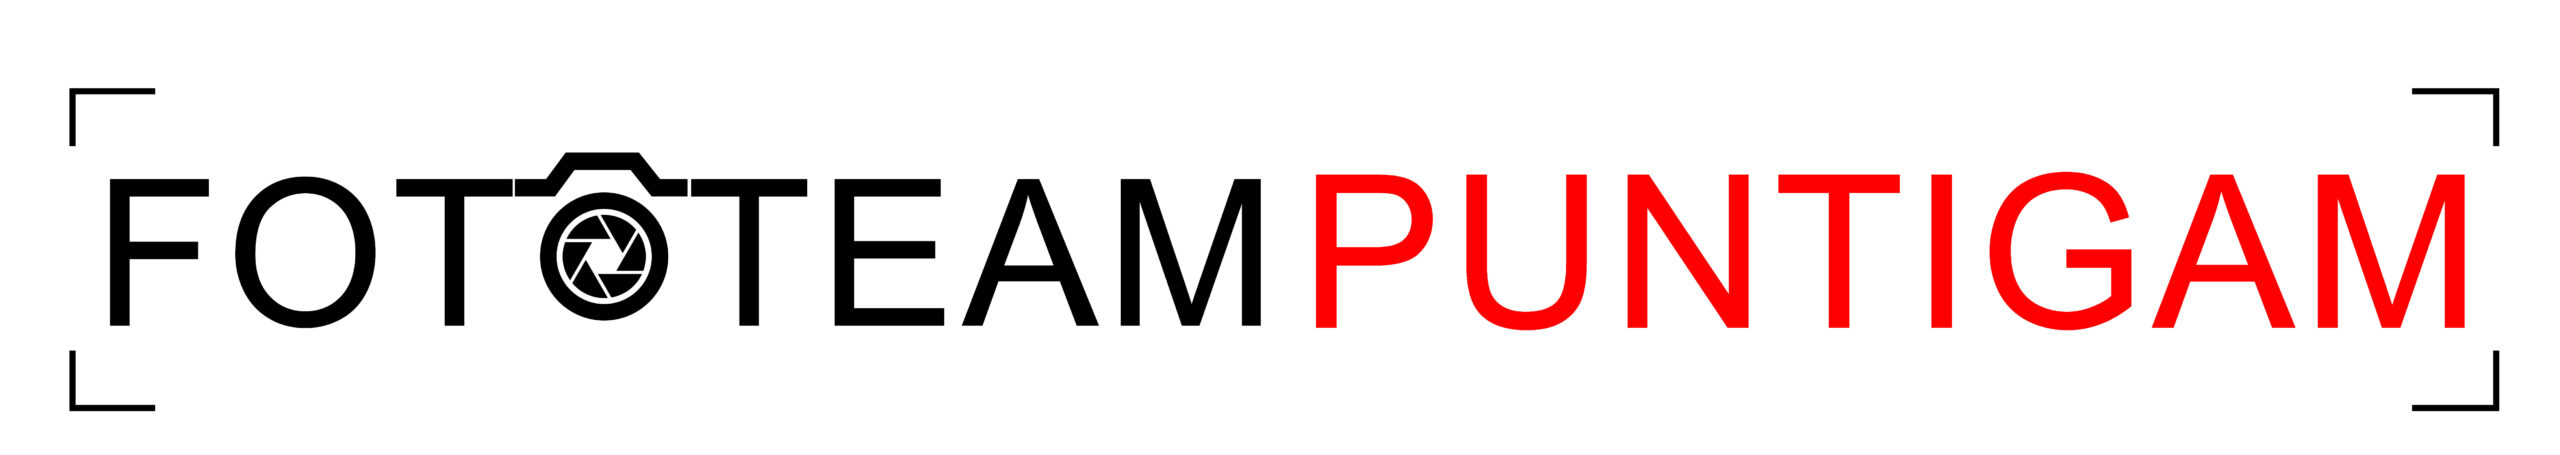 Logo Fototeam Puntigam